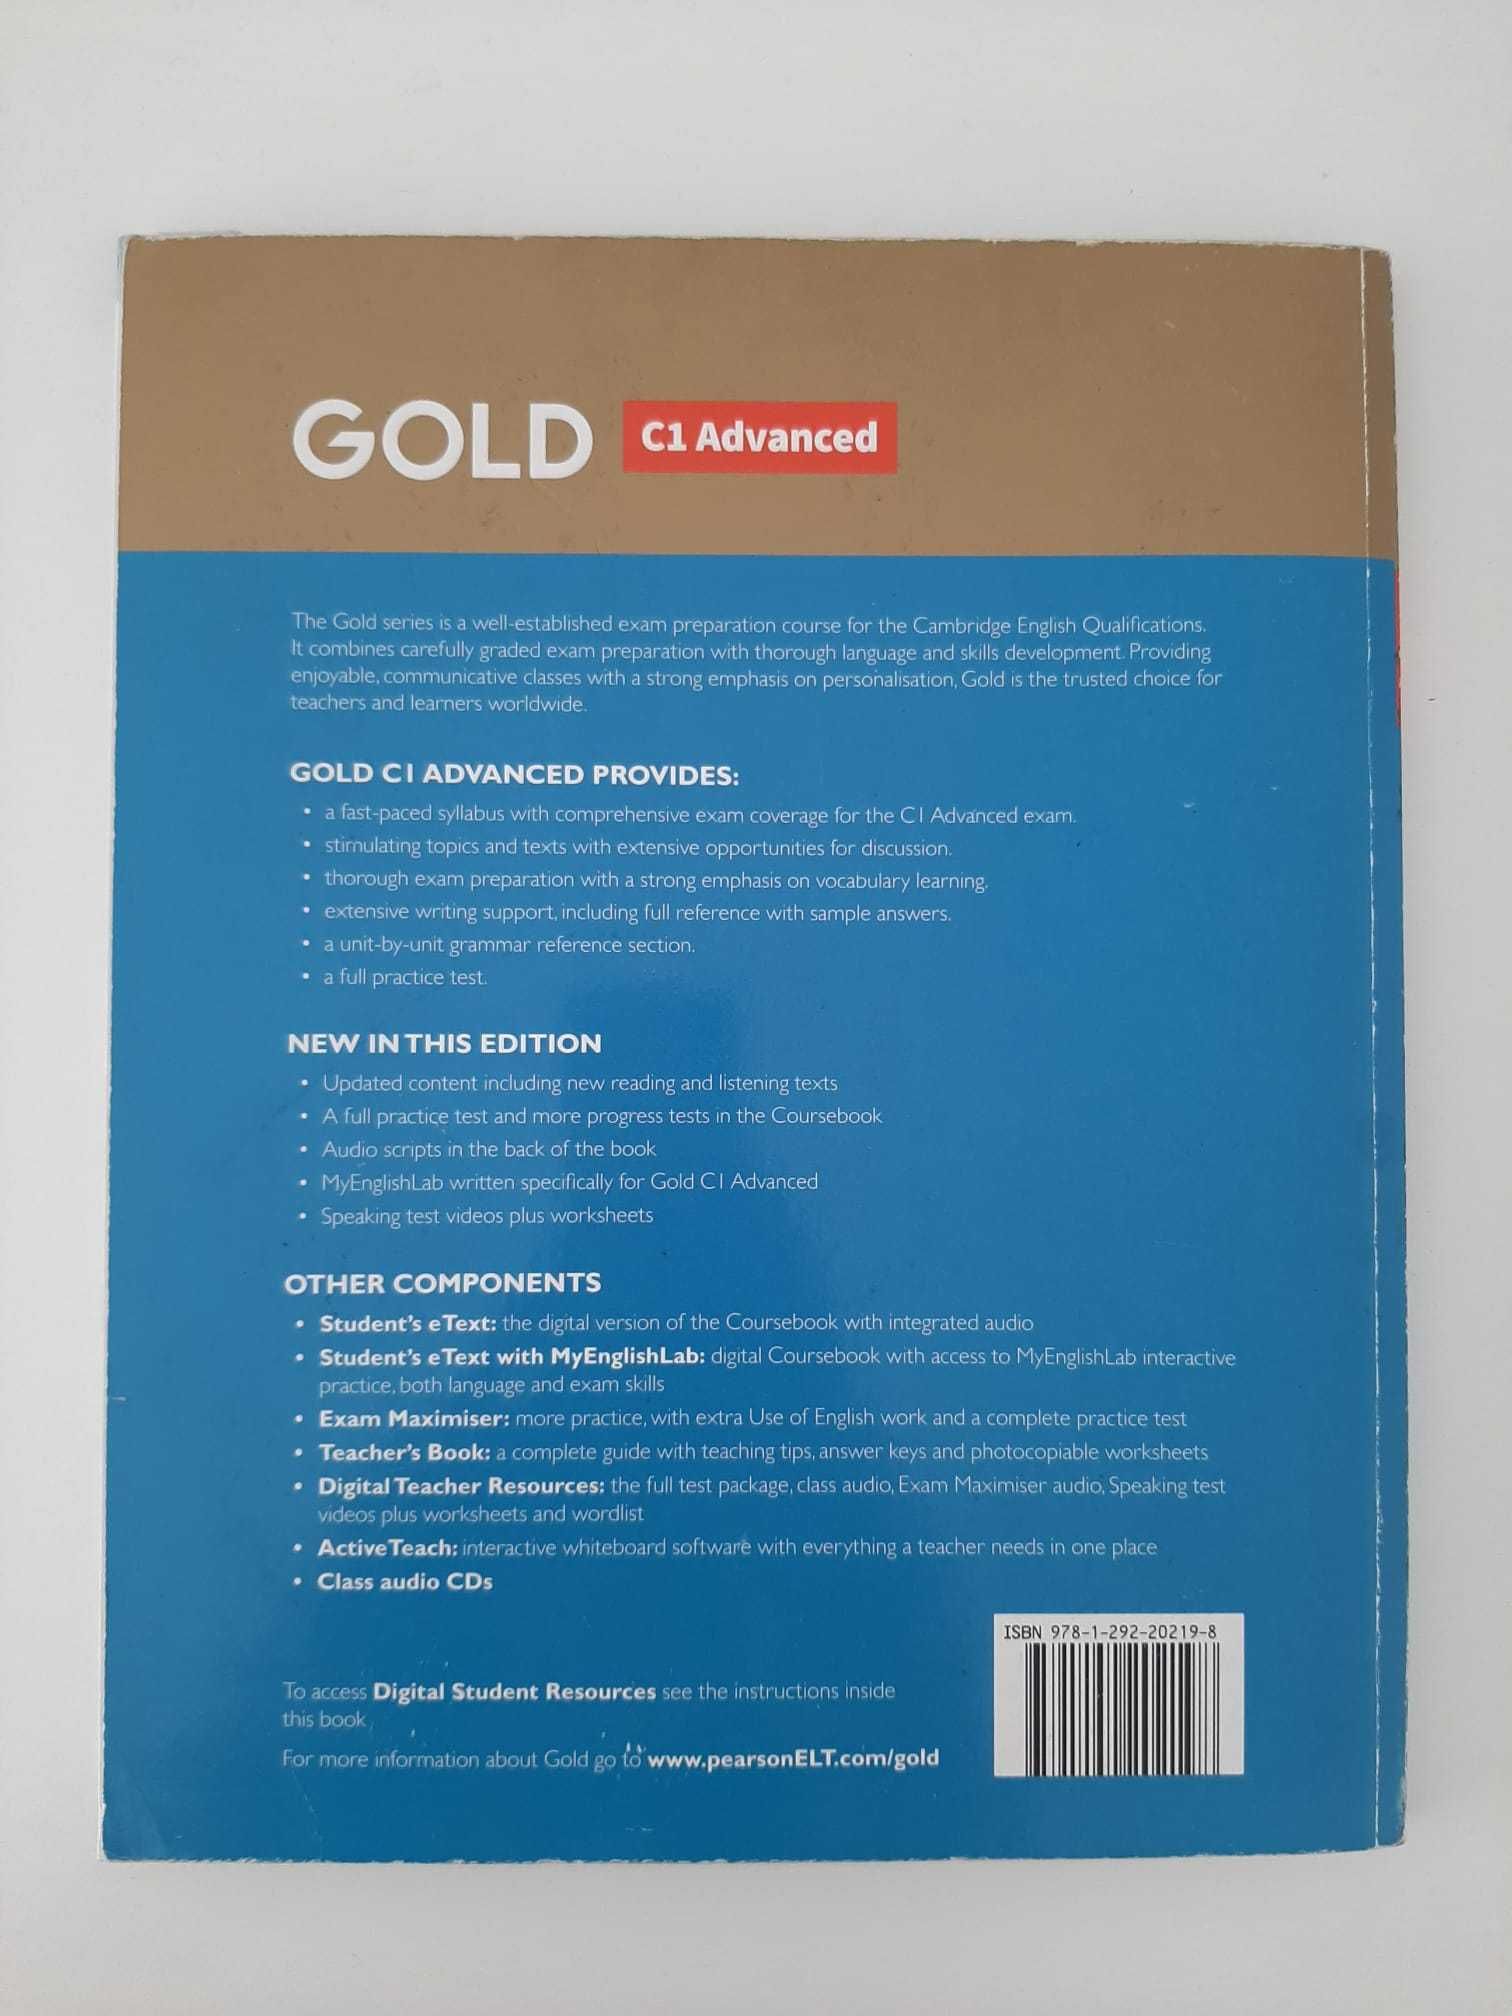 Gold C1 Advanced - Pearson New Edition